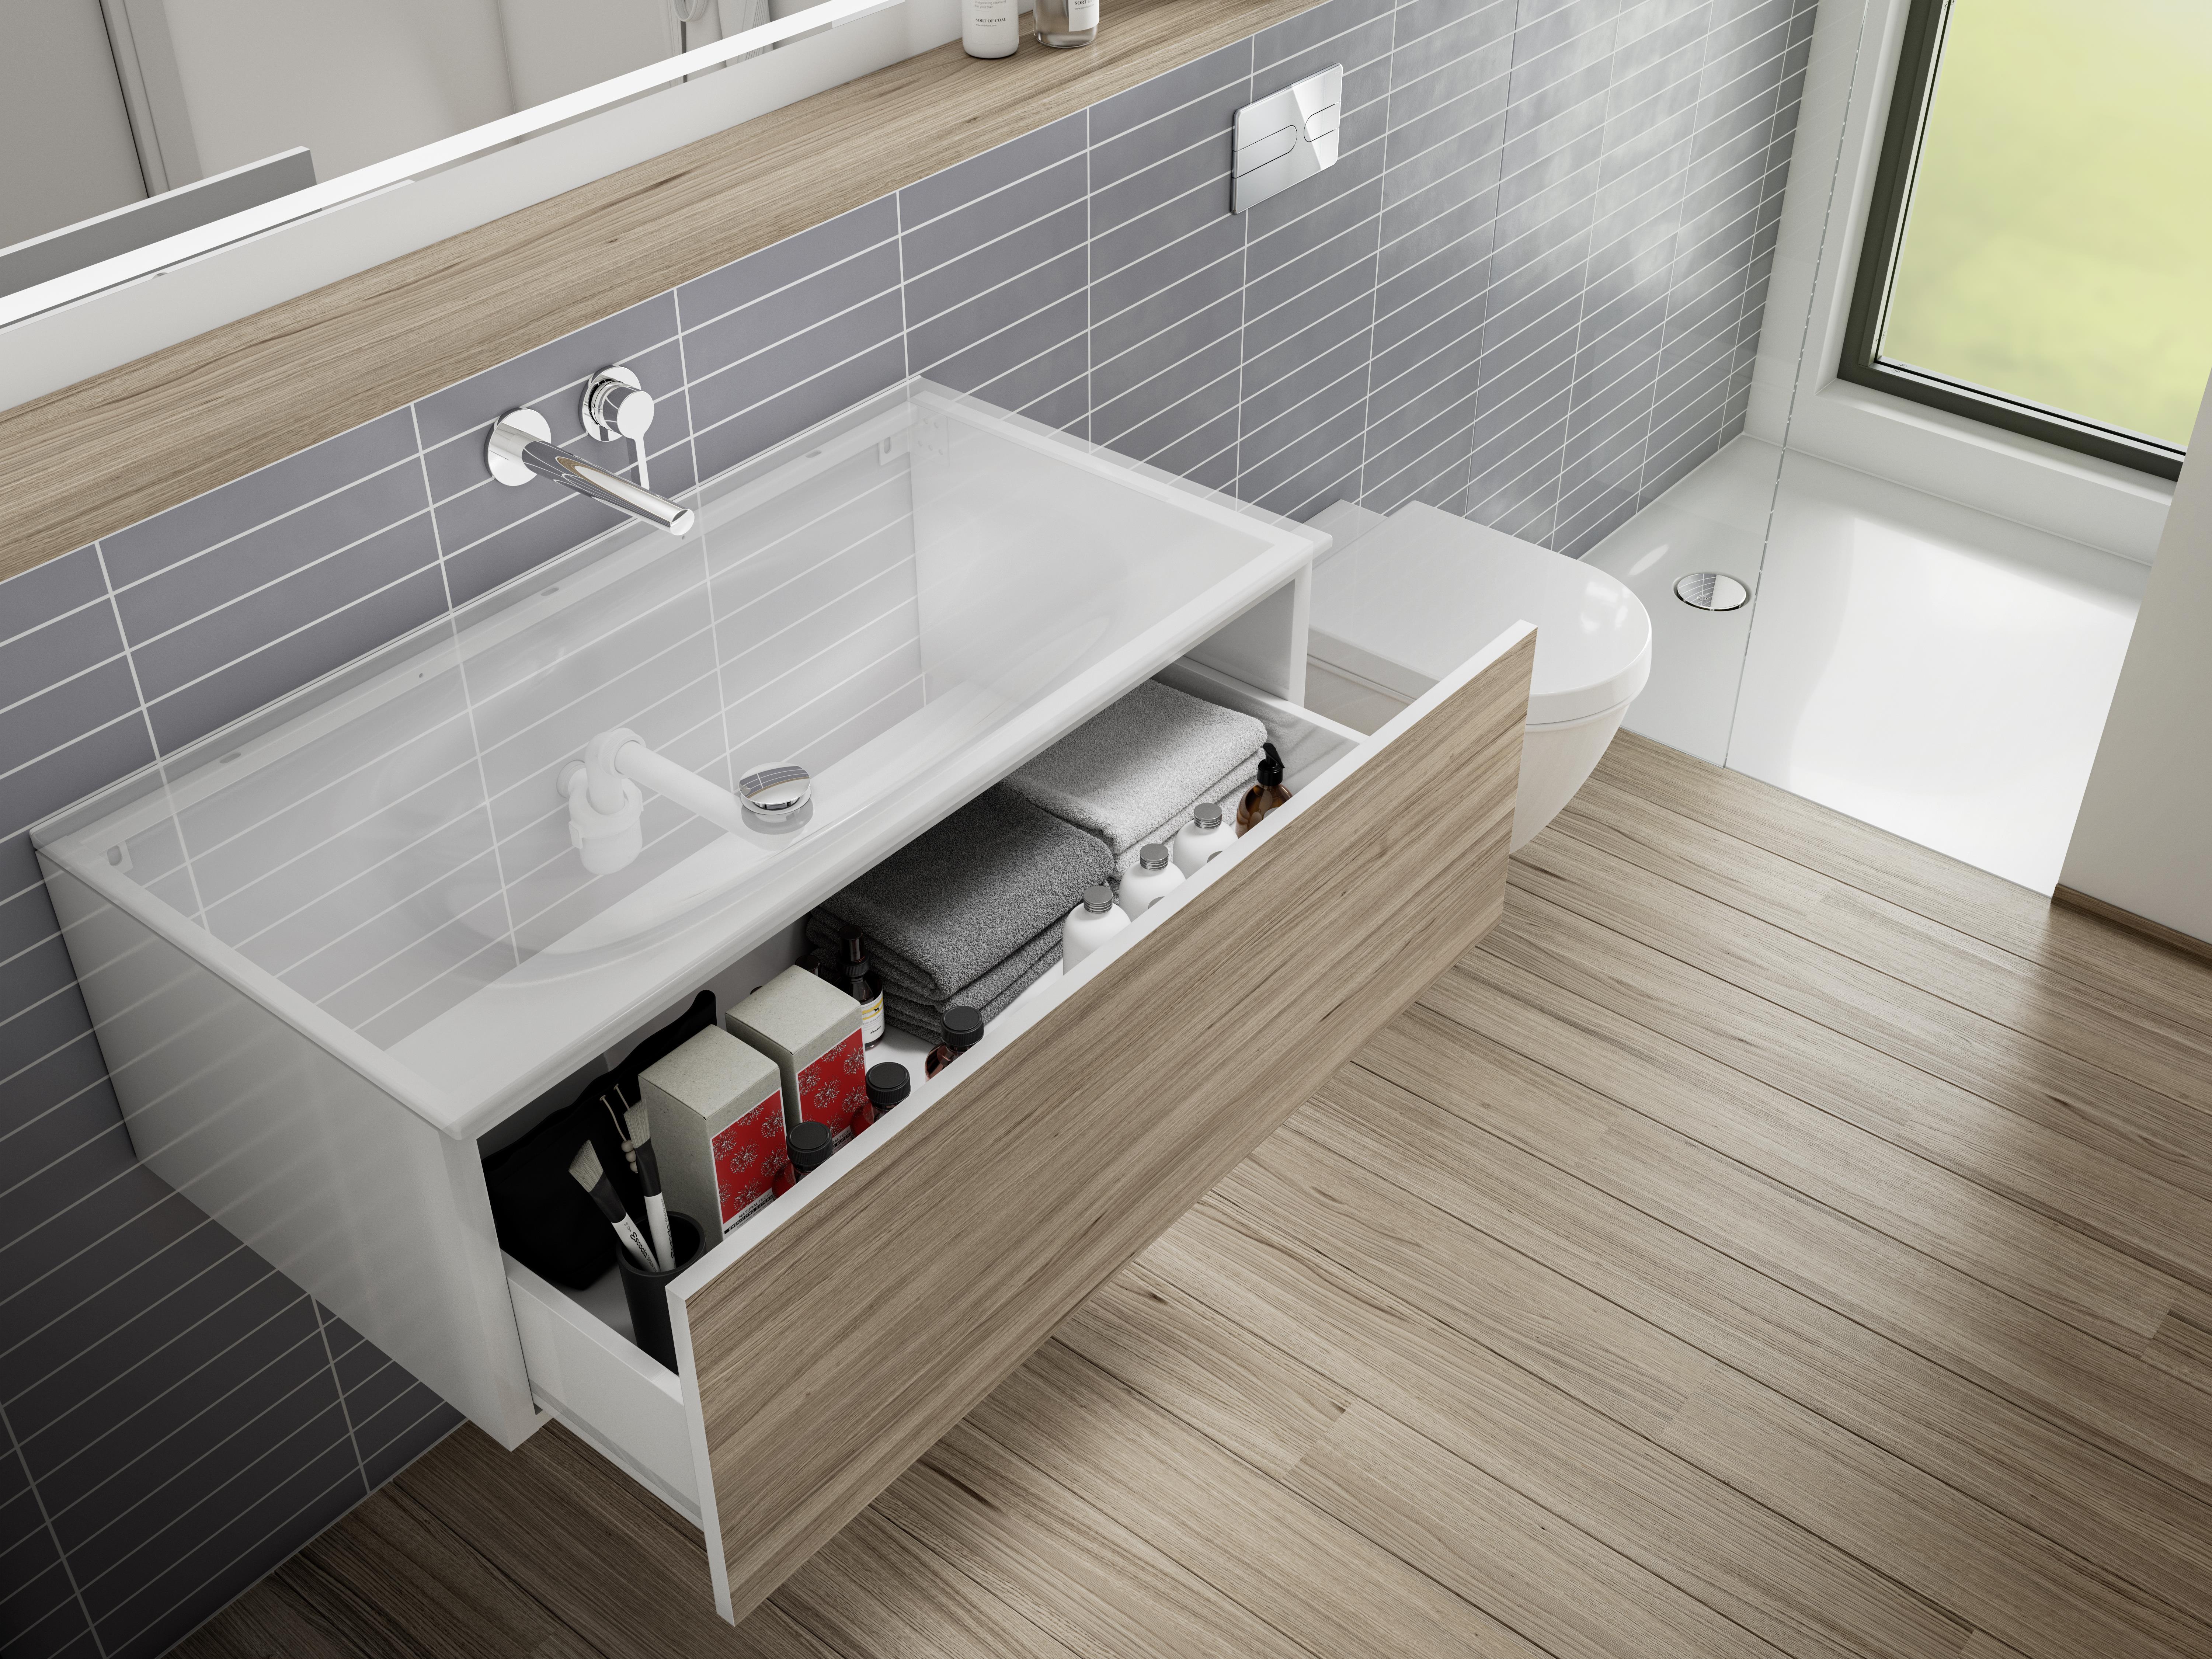 Badkamermeubels en wastafels bestaan voor elke smaak en badkamer. De nieuwe ‘ruimtebesparende’ sifon van Viega zorgt voor een uiterst functionele afvoer, ook in beperkte ruimtes.